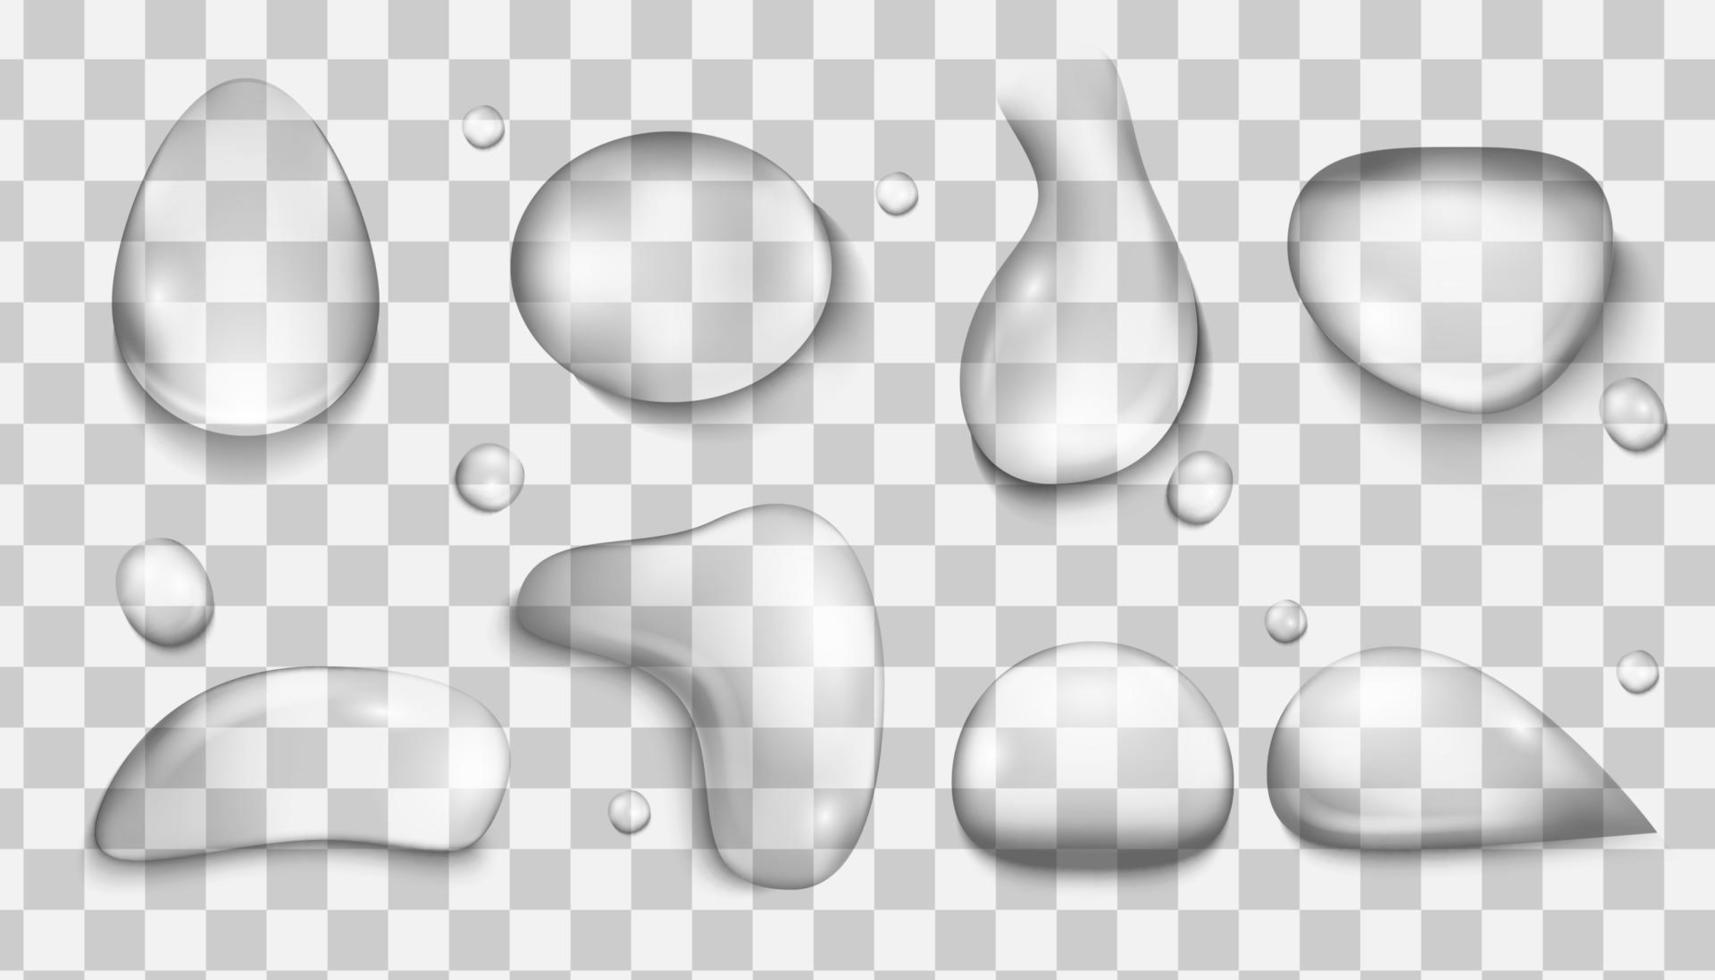 waterdruppels. set van realistische waterdruppels vector